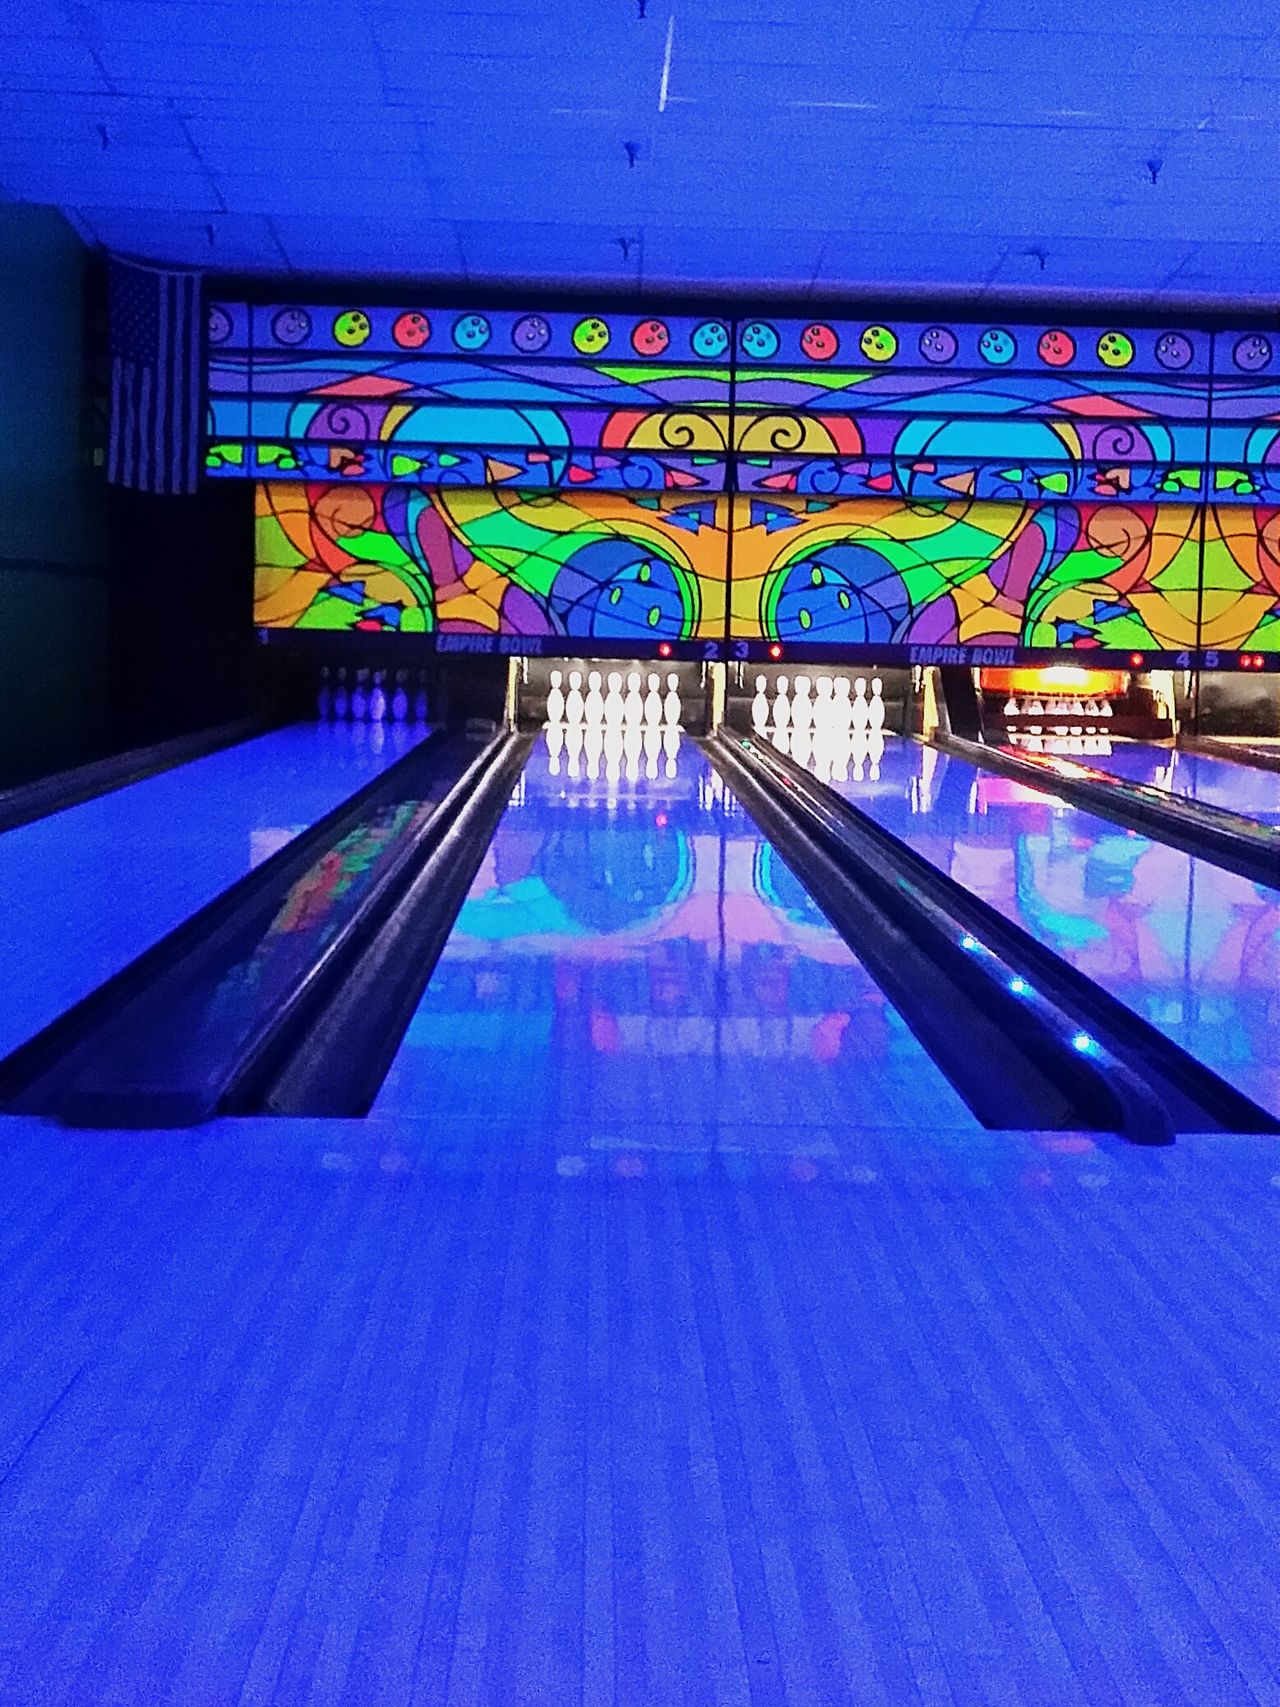 Bowling lane